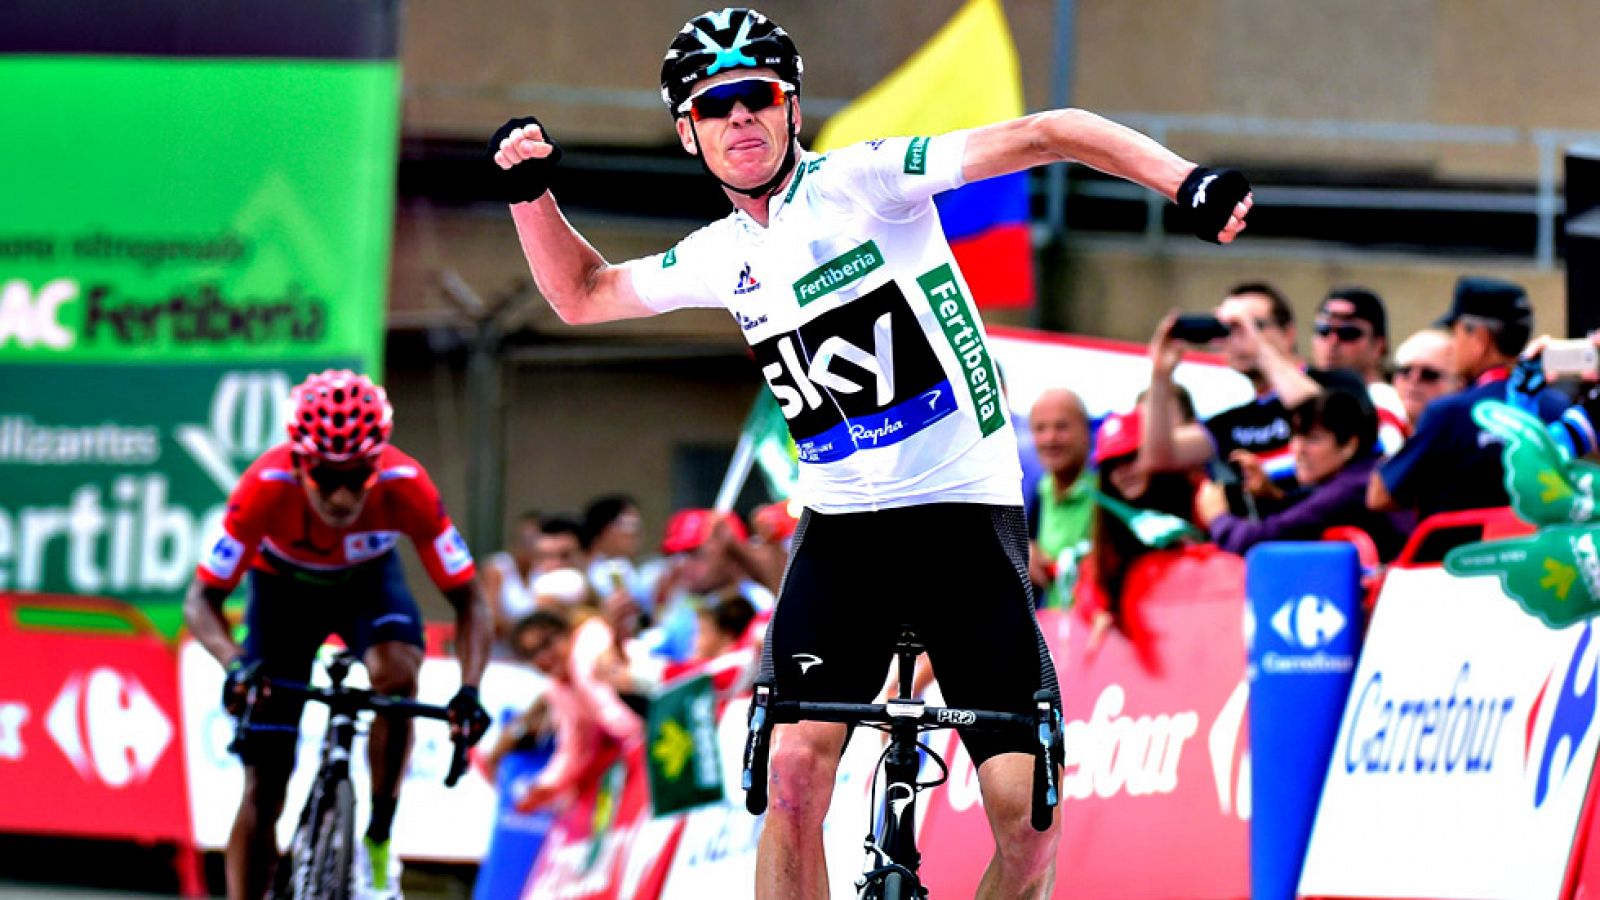 El británico Chris Froome (Sky) se ha impuesto en la undécima etapa de la Vuelta a España disputada entre Colunga y Peña Cabarga, de 168,6 kilómetros, en la que Nairo Quintana (Movistar) retuvo el maillot rojo. En un duelo estelar entre Froome y Quin